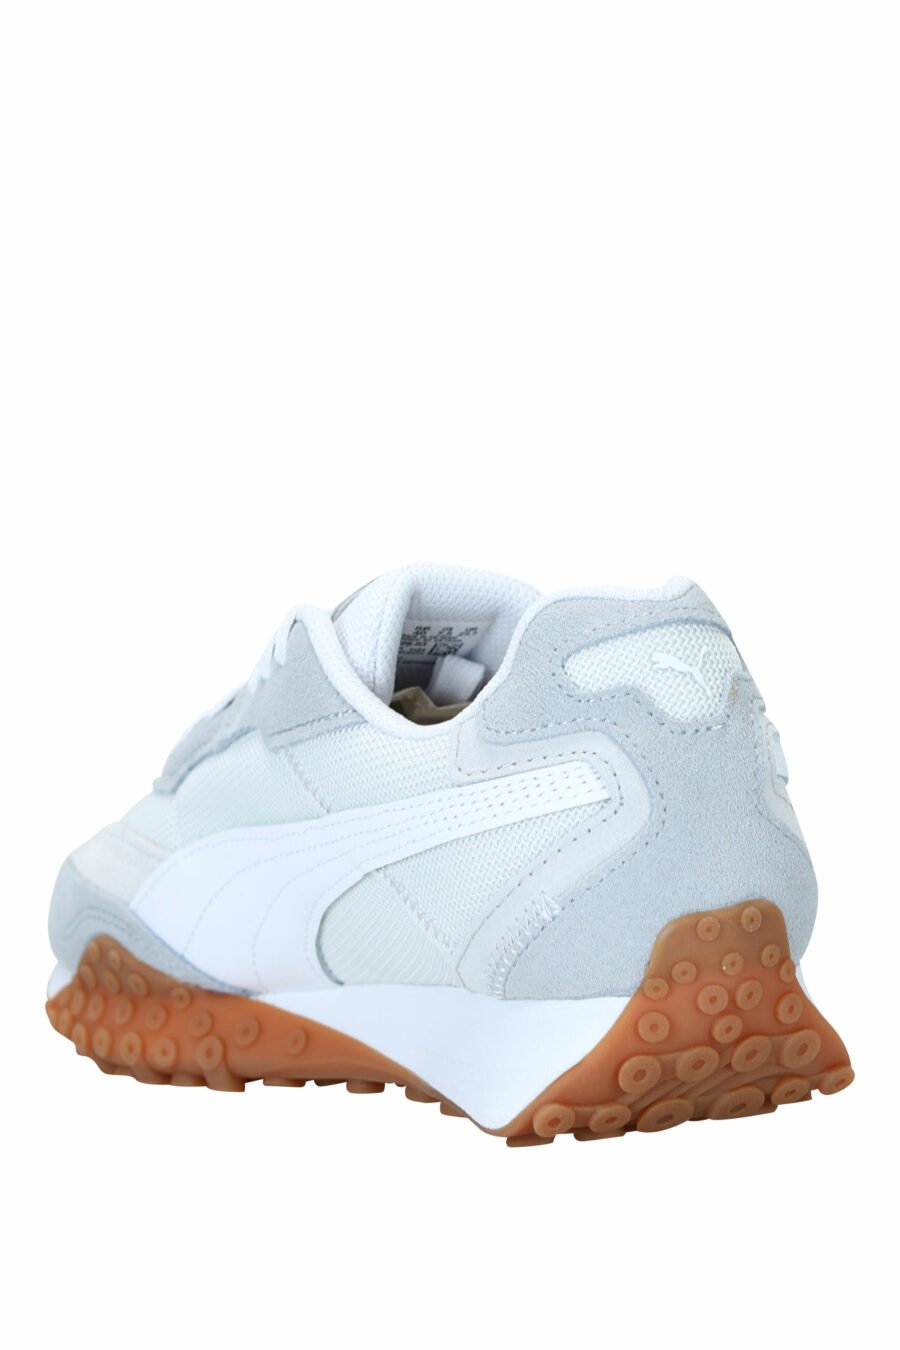 Chaussures grises "biktop" - 4099686295554 3